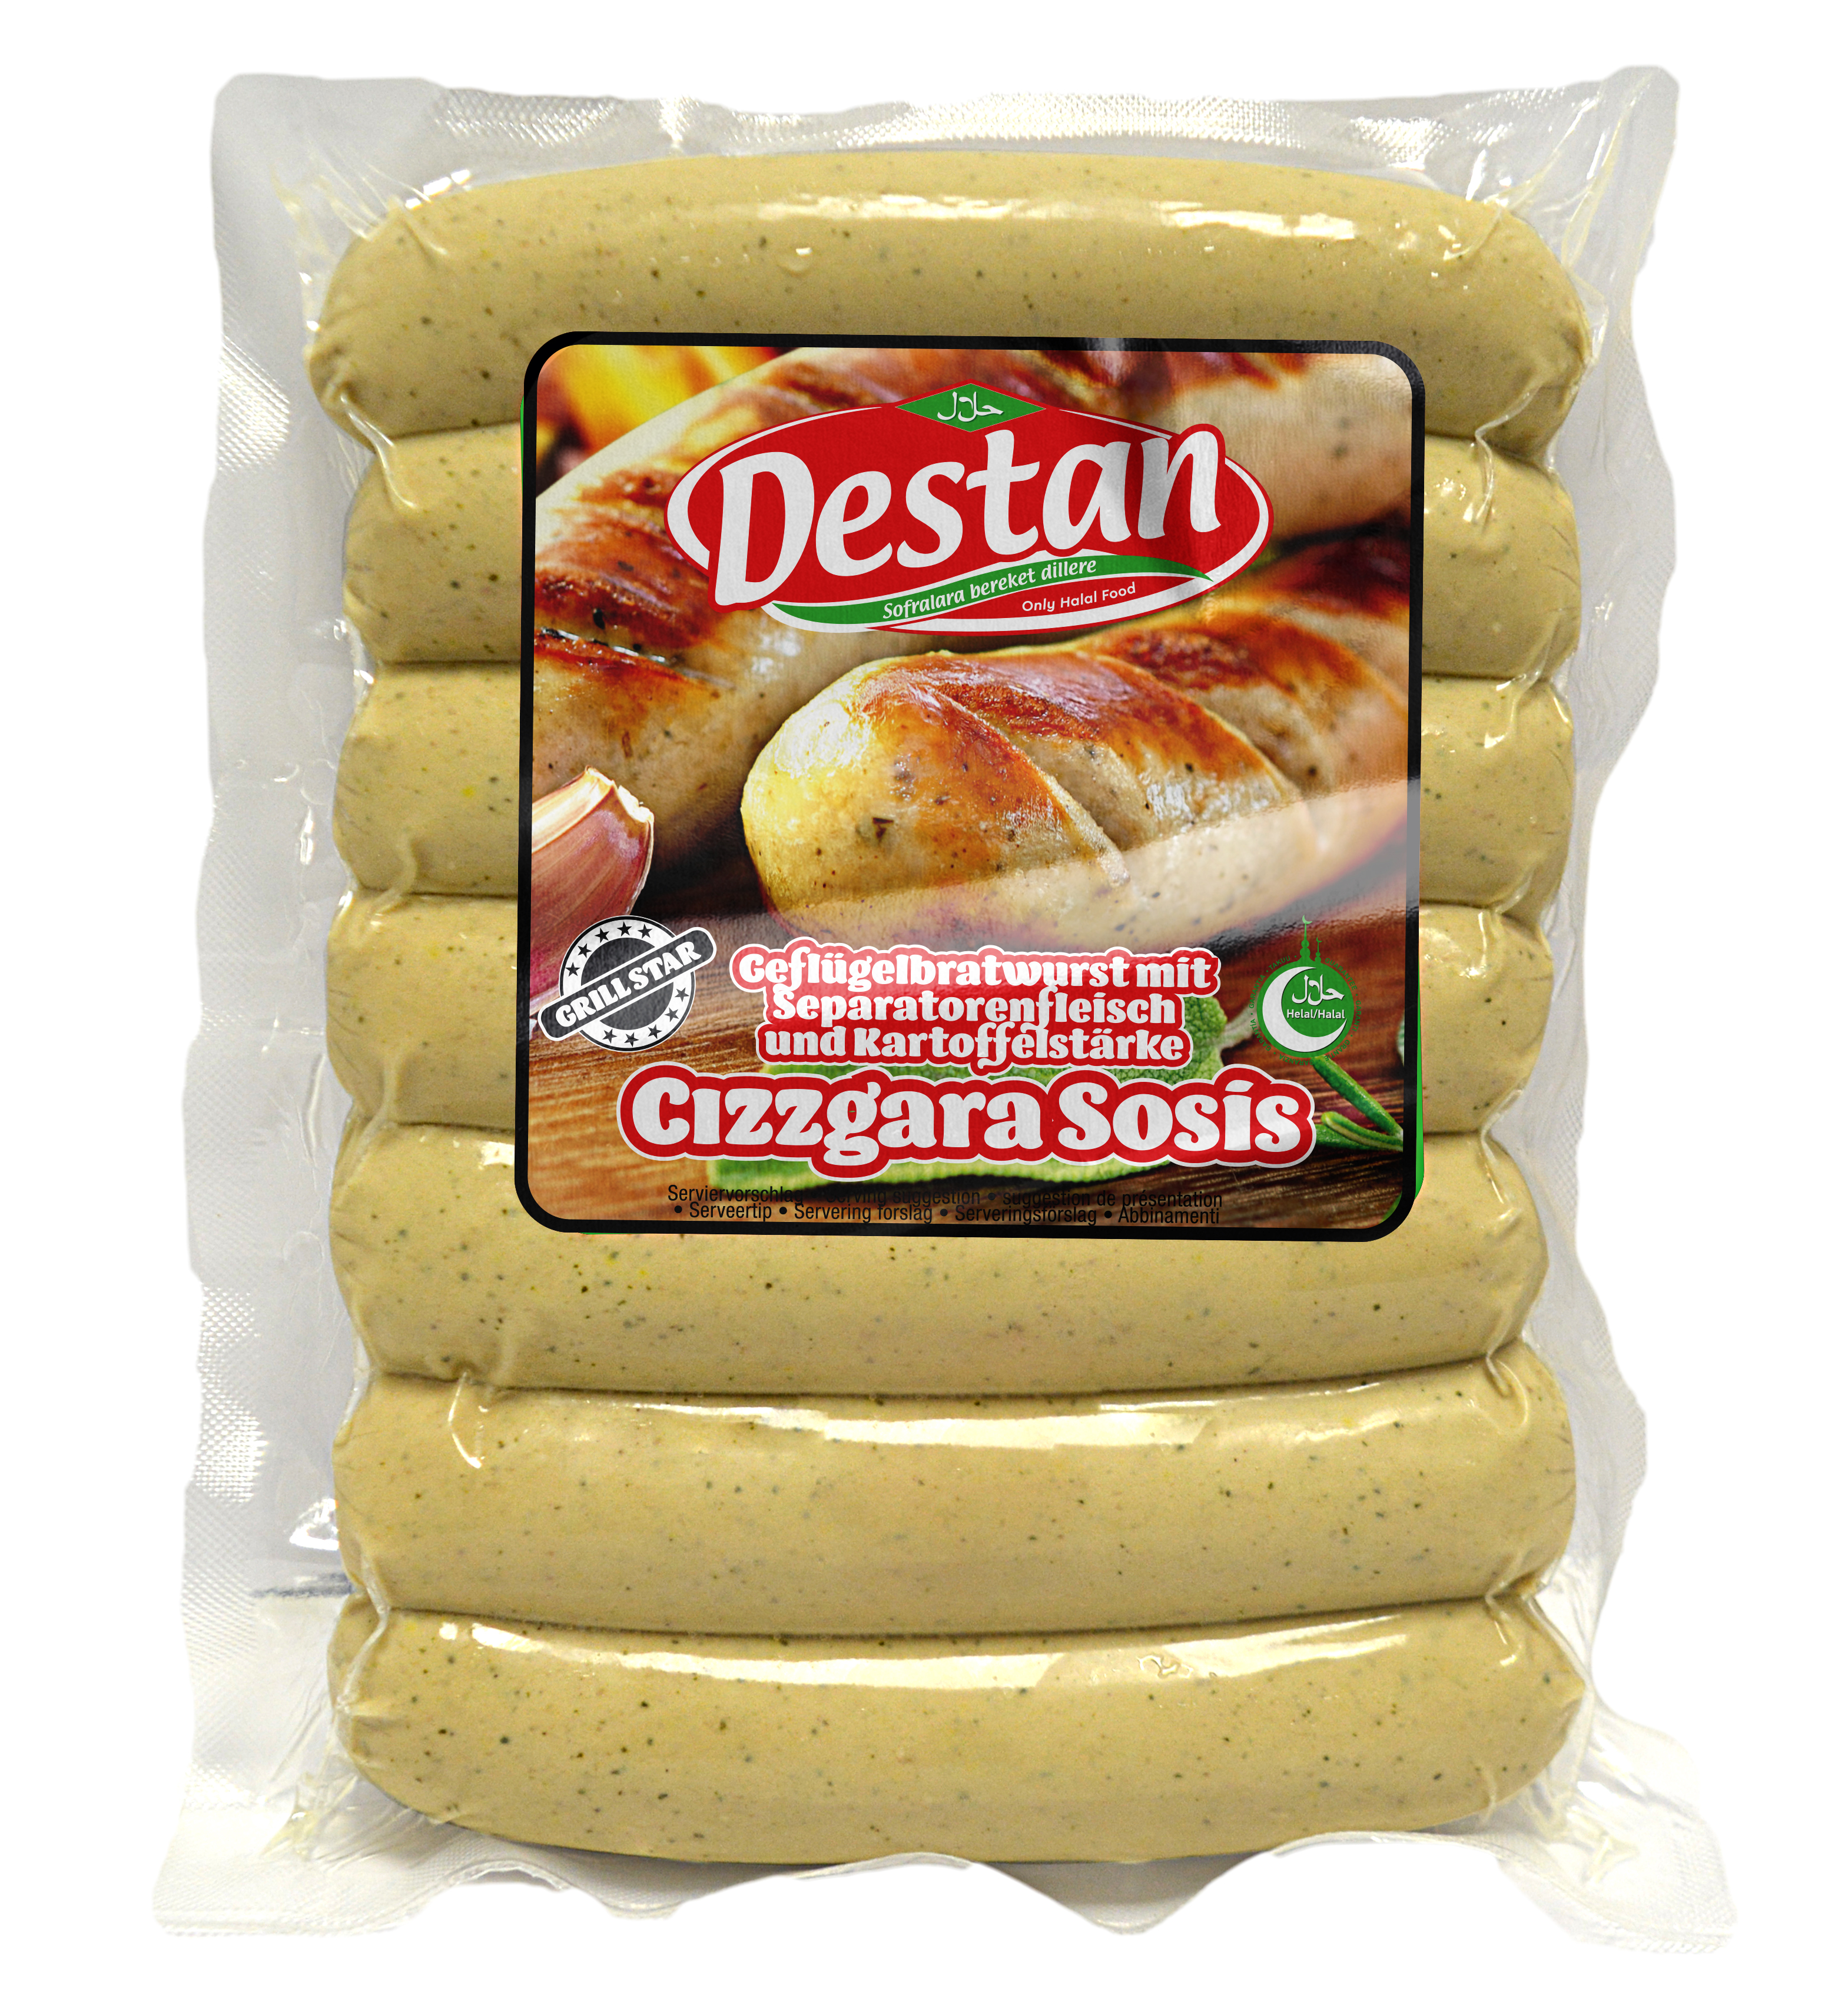 Destan Cizzgara Grillwürstchen 400g